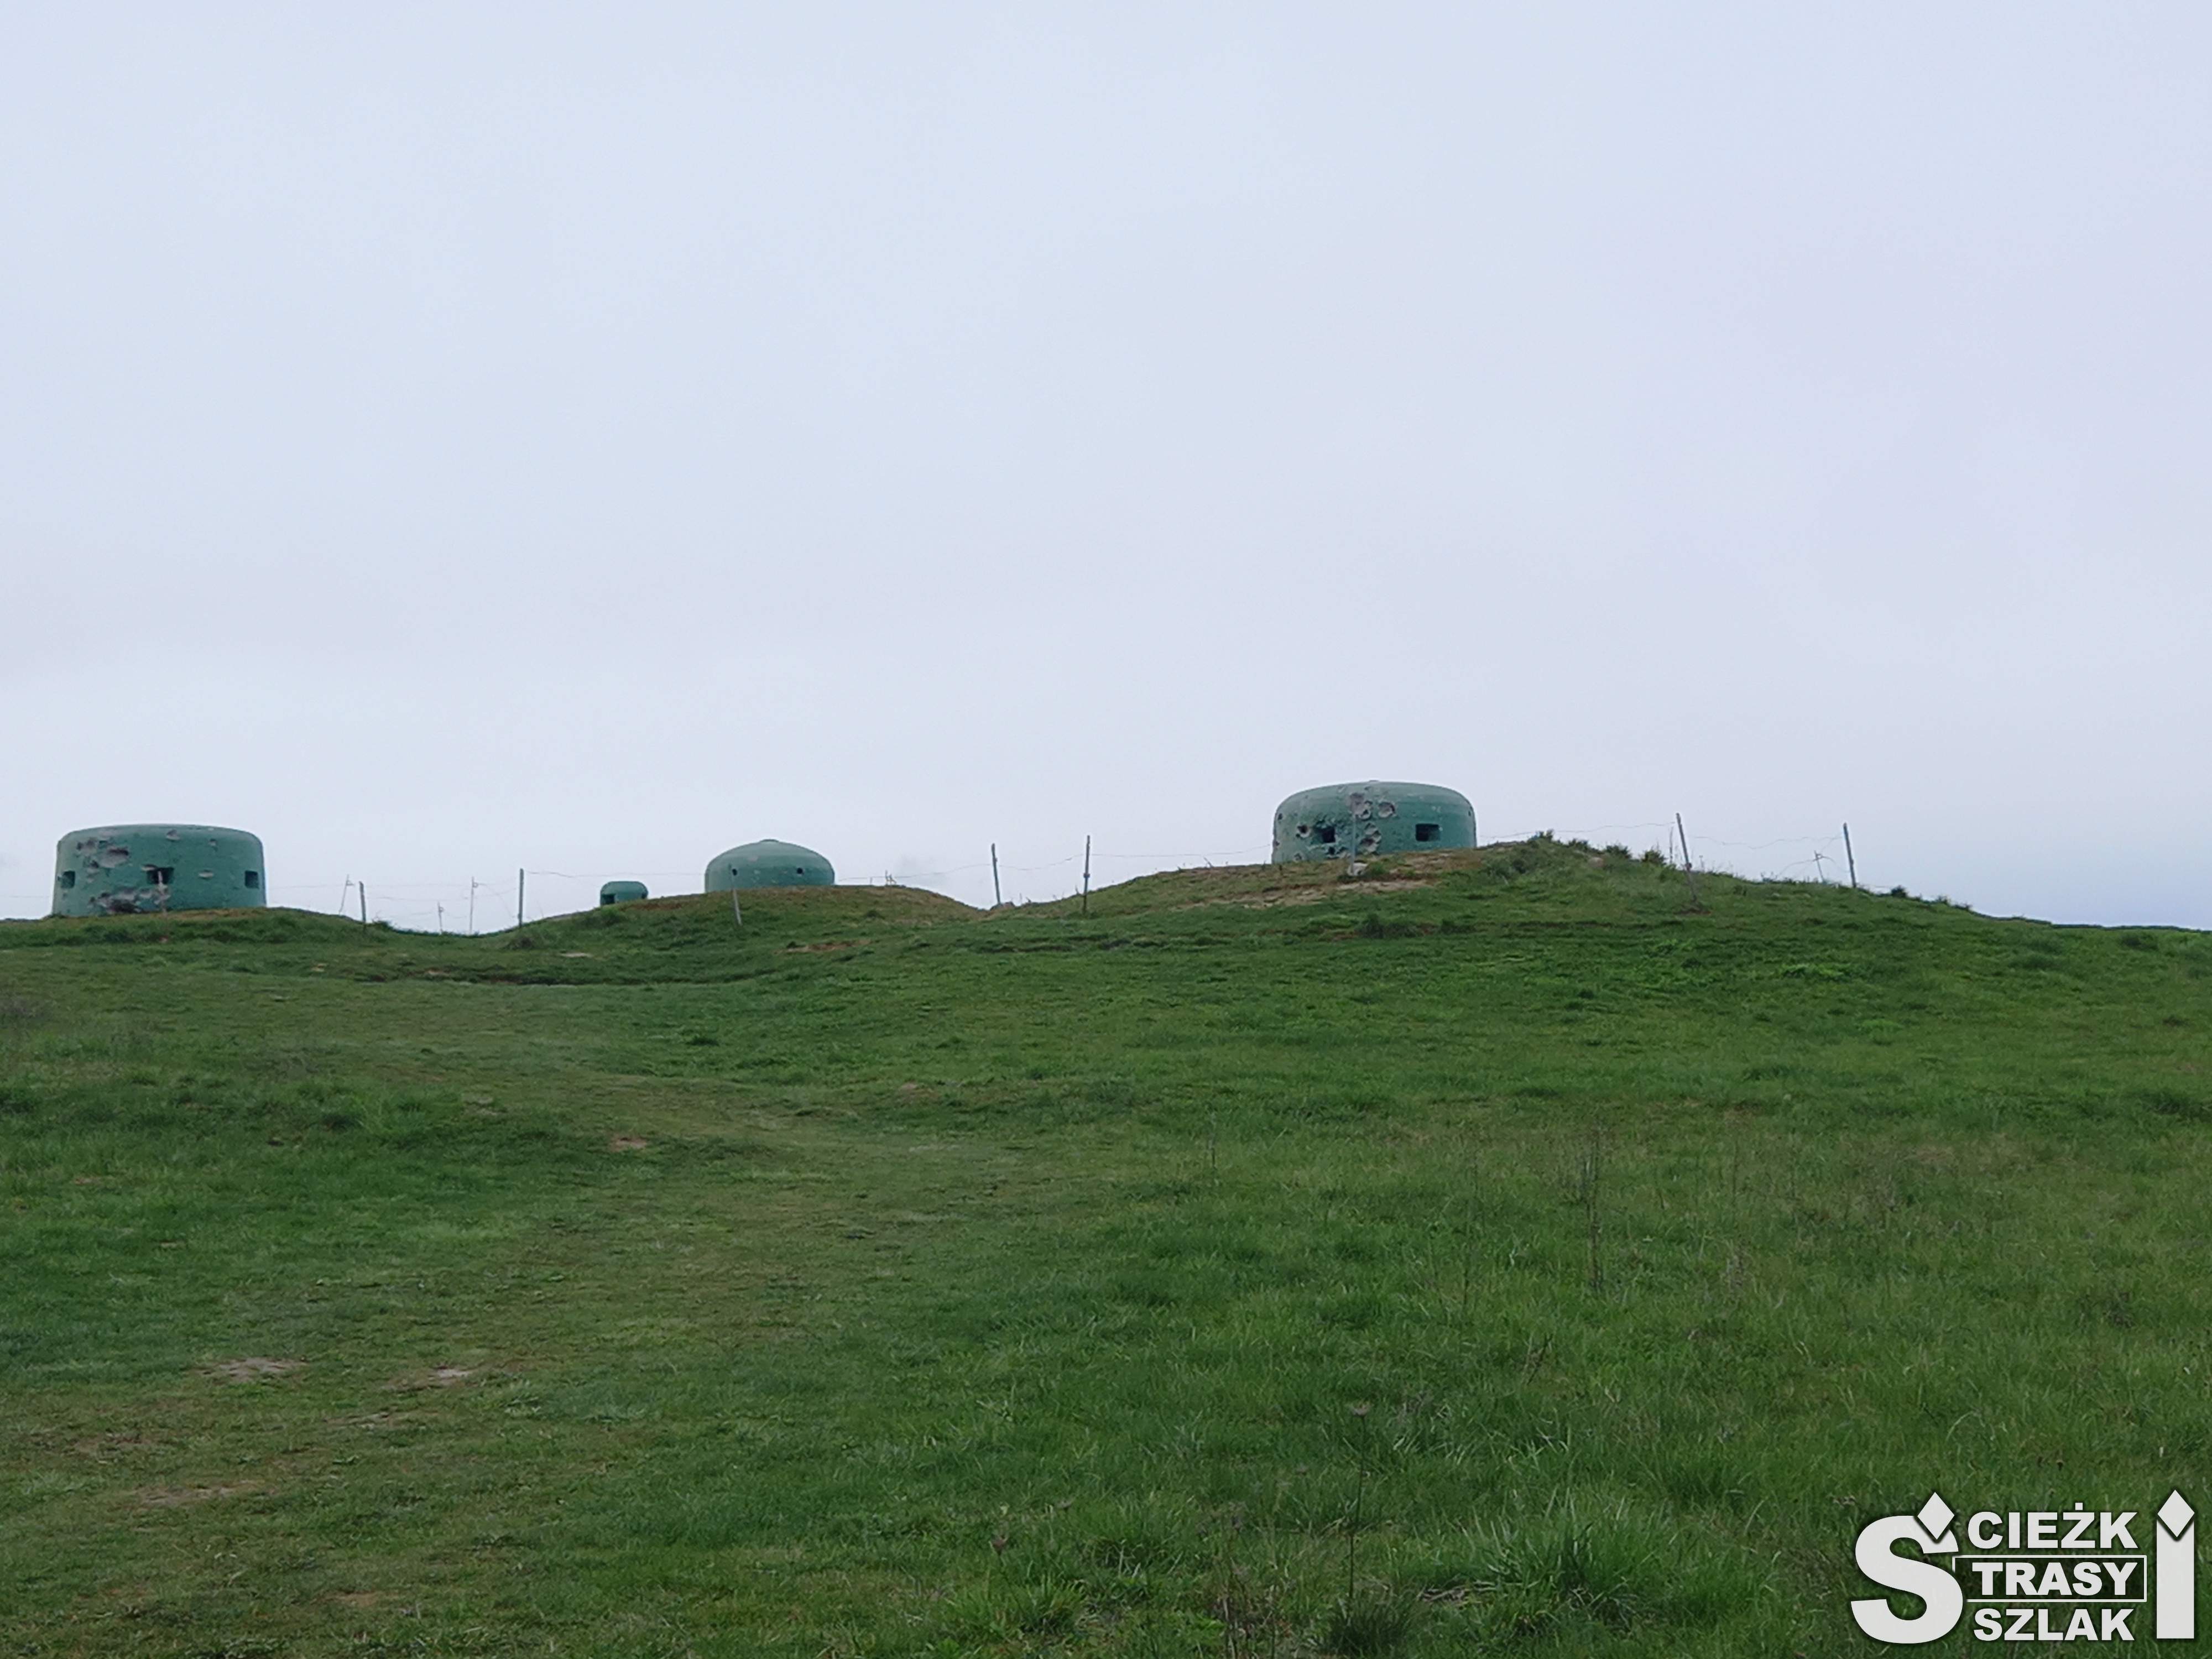 Trzy betonowe bunkry, walce z otworami na broń wystające ponad powierzchnię ziemi na zielonym wzgórzu